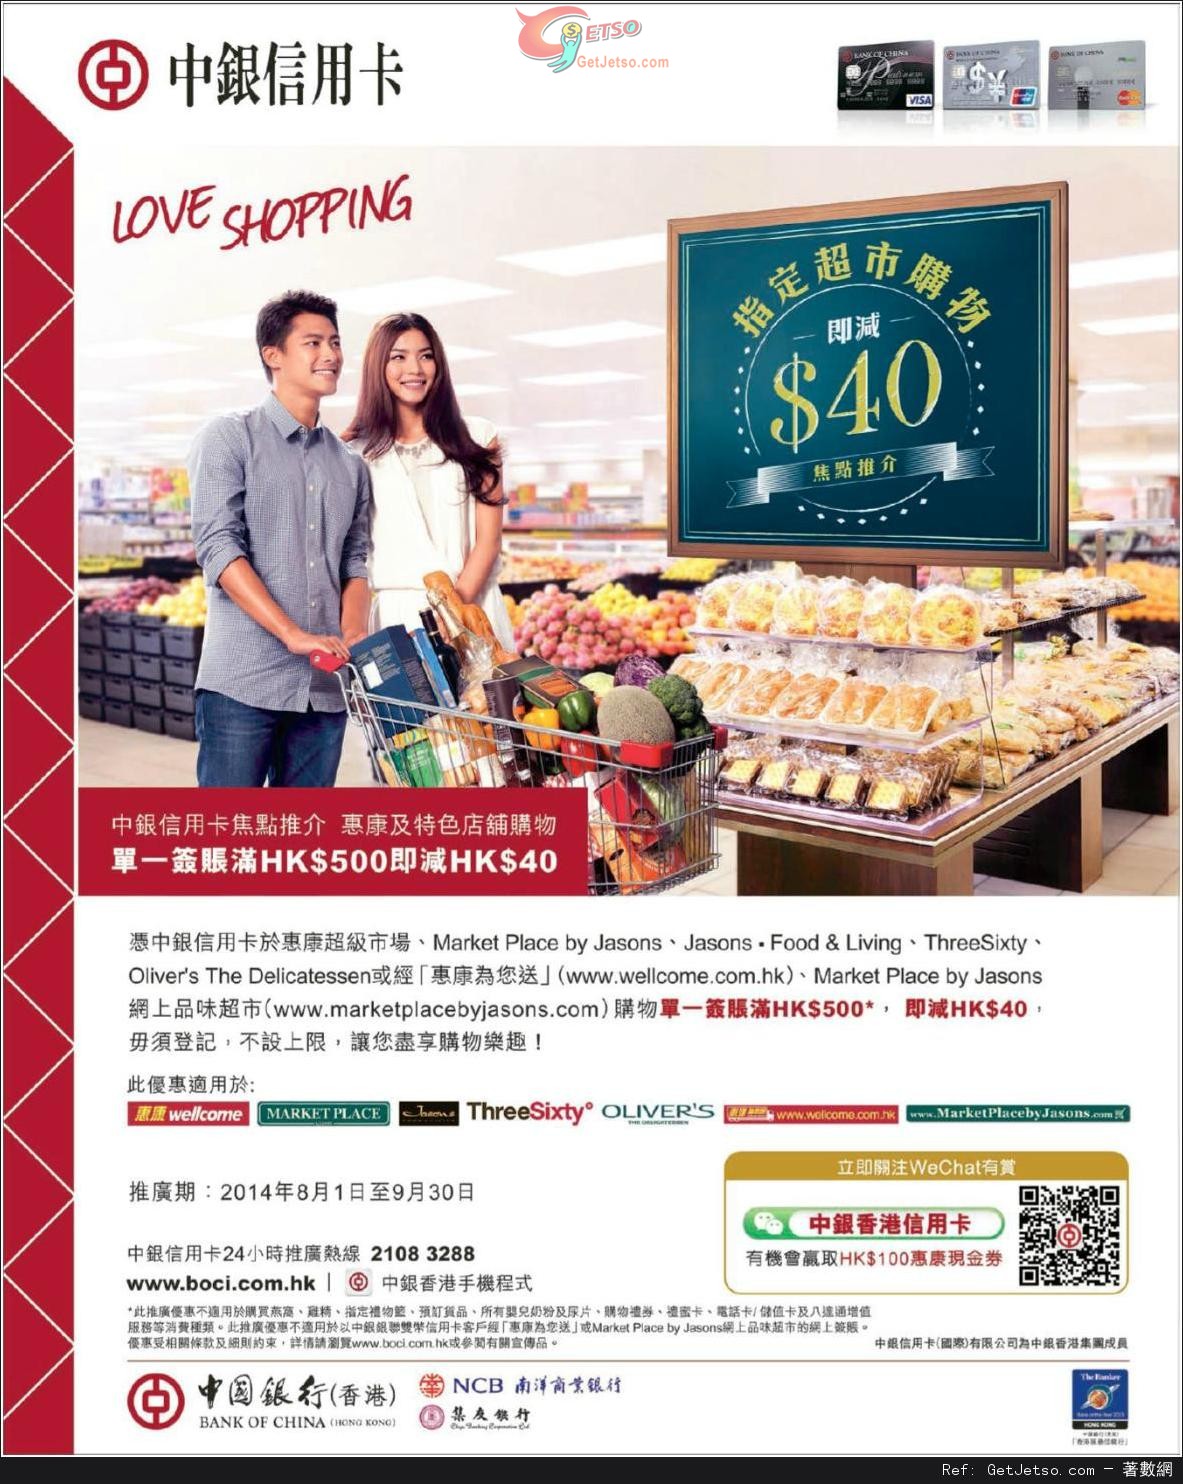 中銀信用卡享惠康超級市場購物滿0即減優惠(至14年9月30日)圖片1